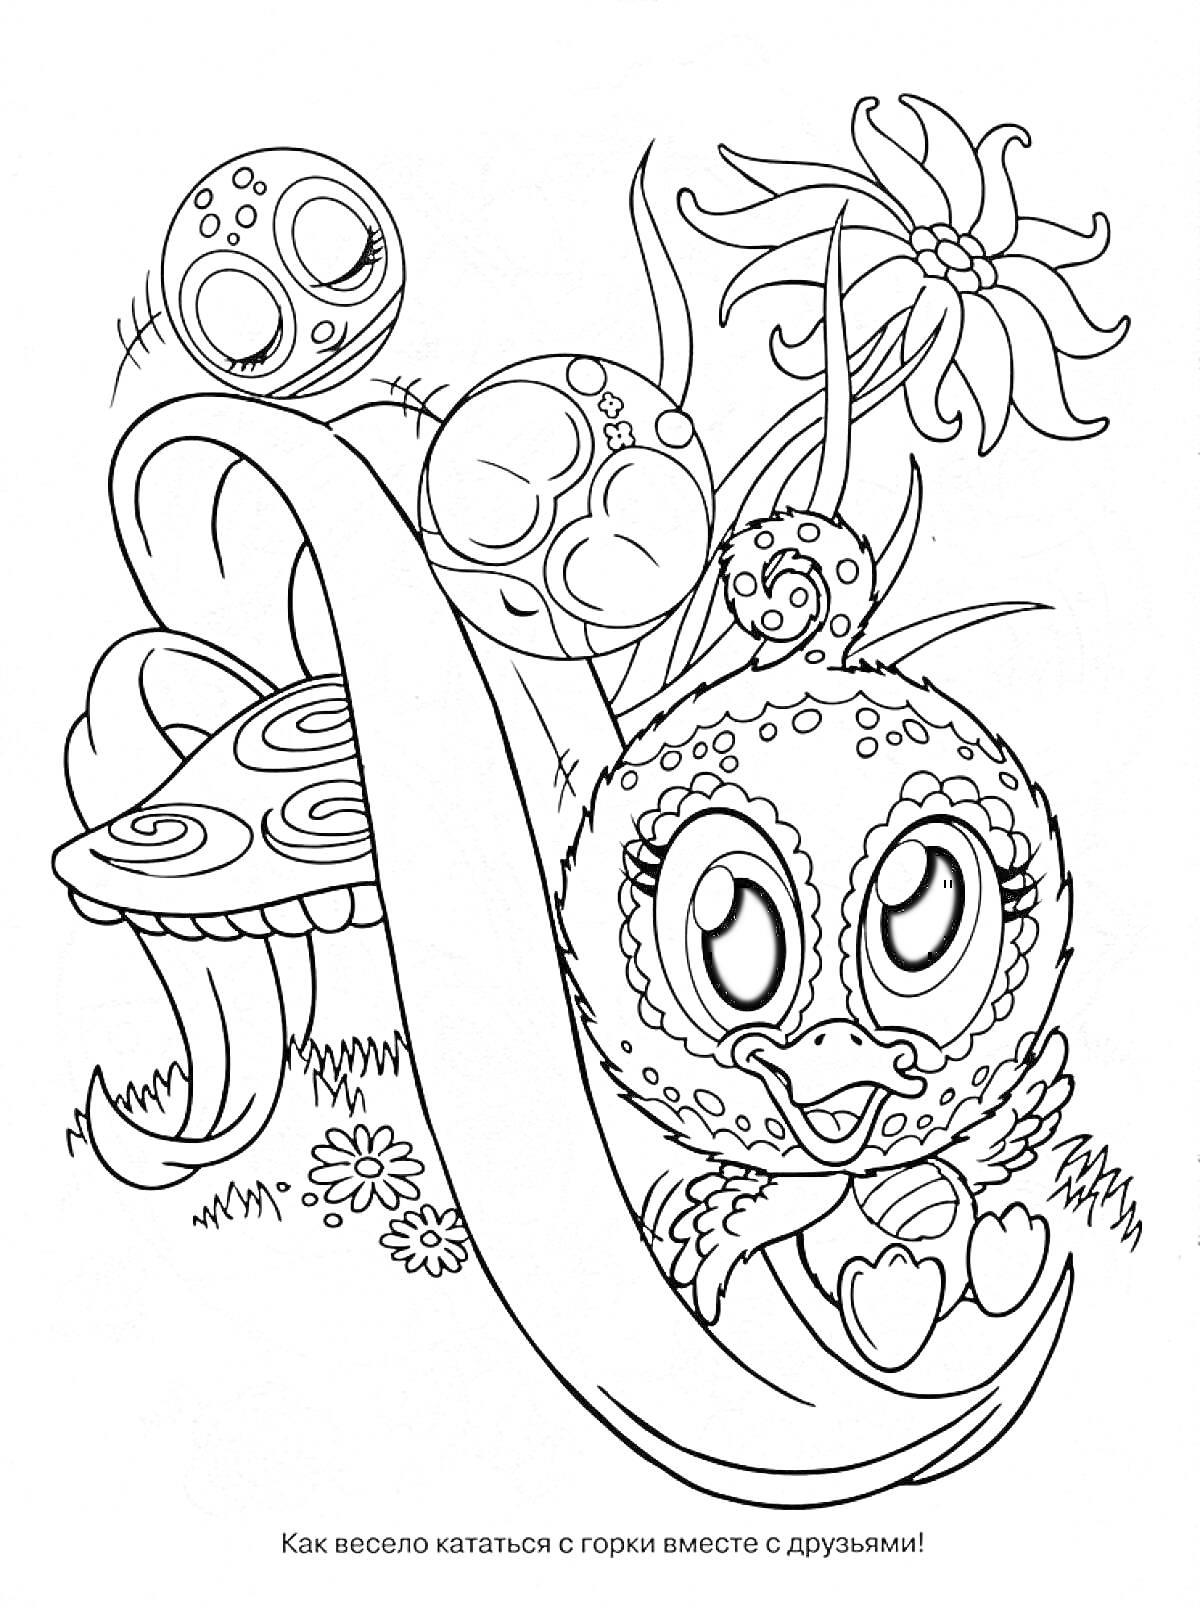 Раскраска Зублс, катание с горки, в окружении друзья, цветы и грибы